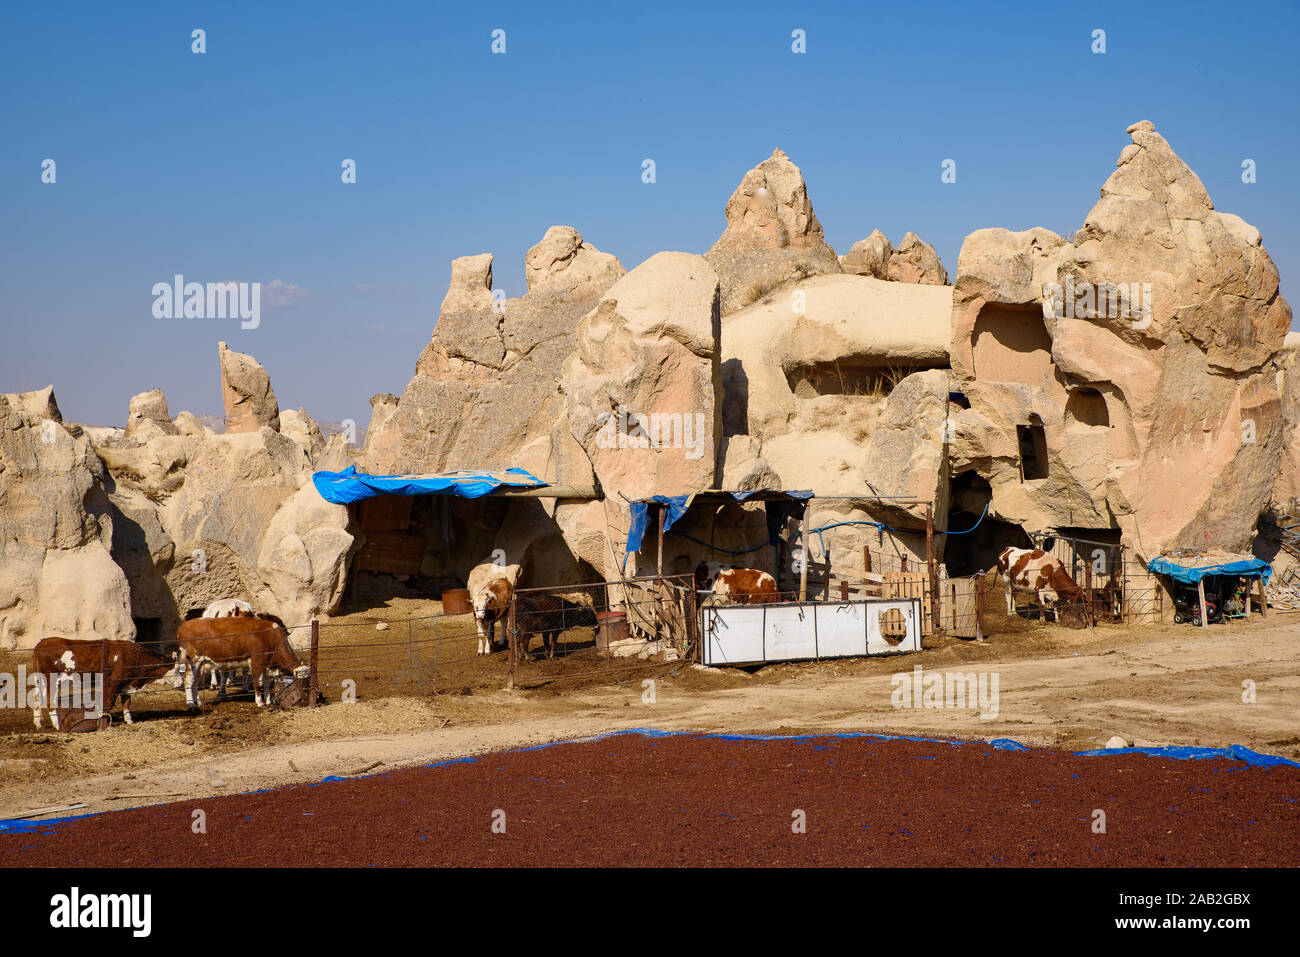 Ferme entourée de maisons troglodytes creusées dans la pierre à Göreme, Cappadoce, Turquie Banque D'Images